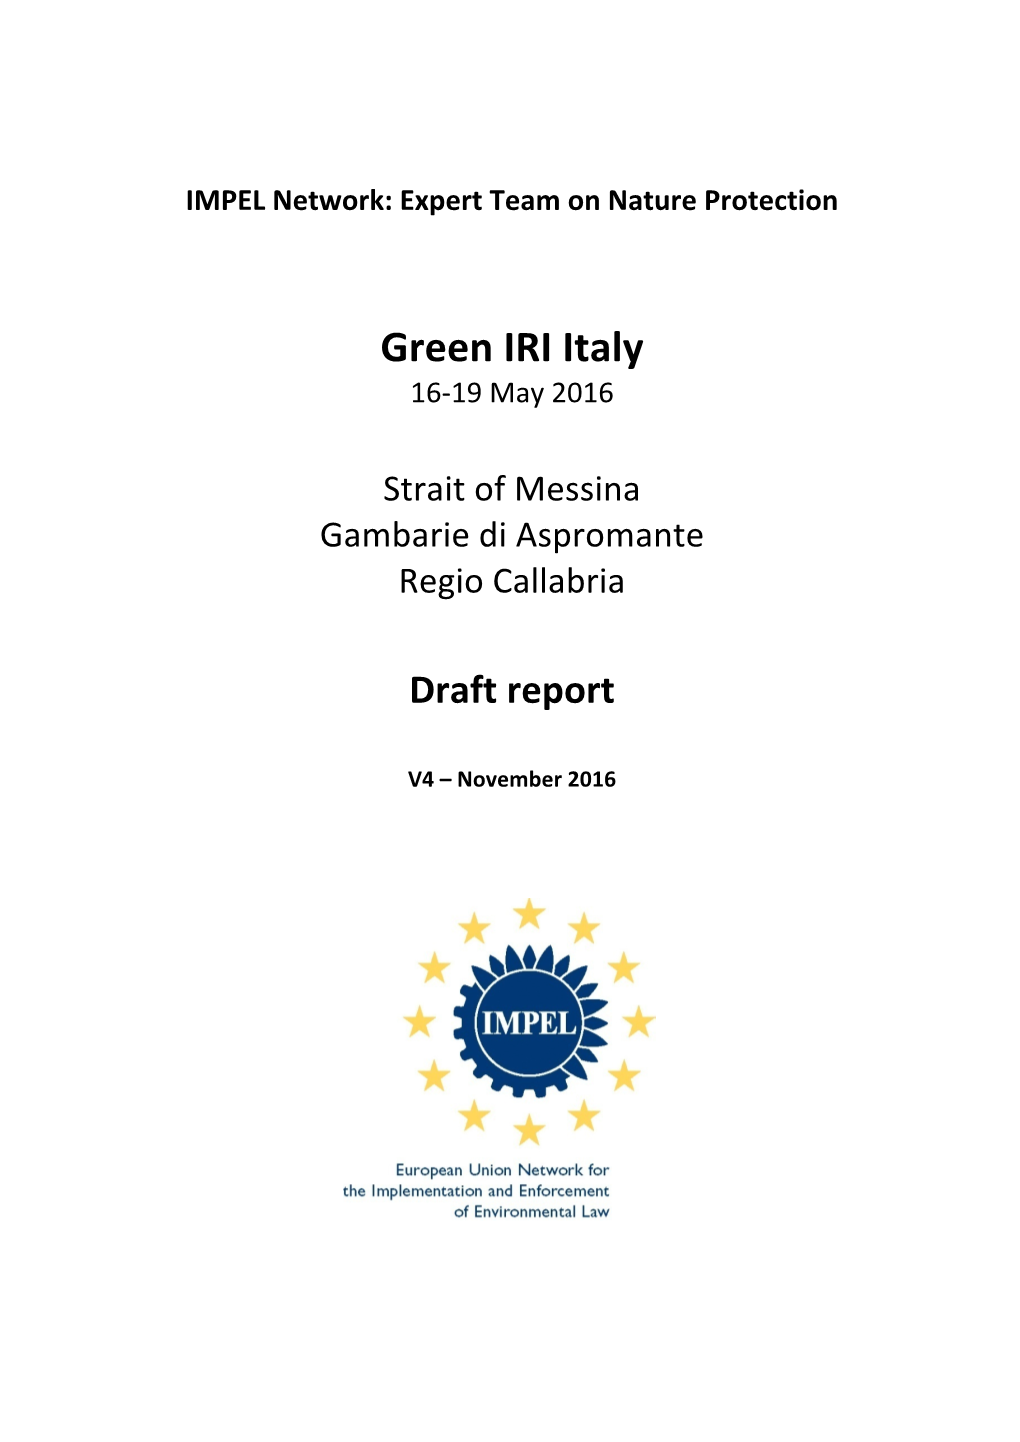 Green IRI Italy 16-19 May 2016